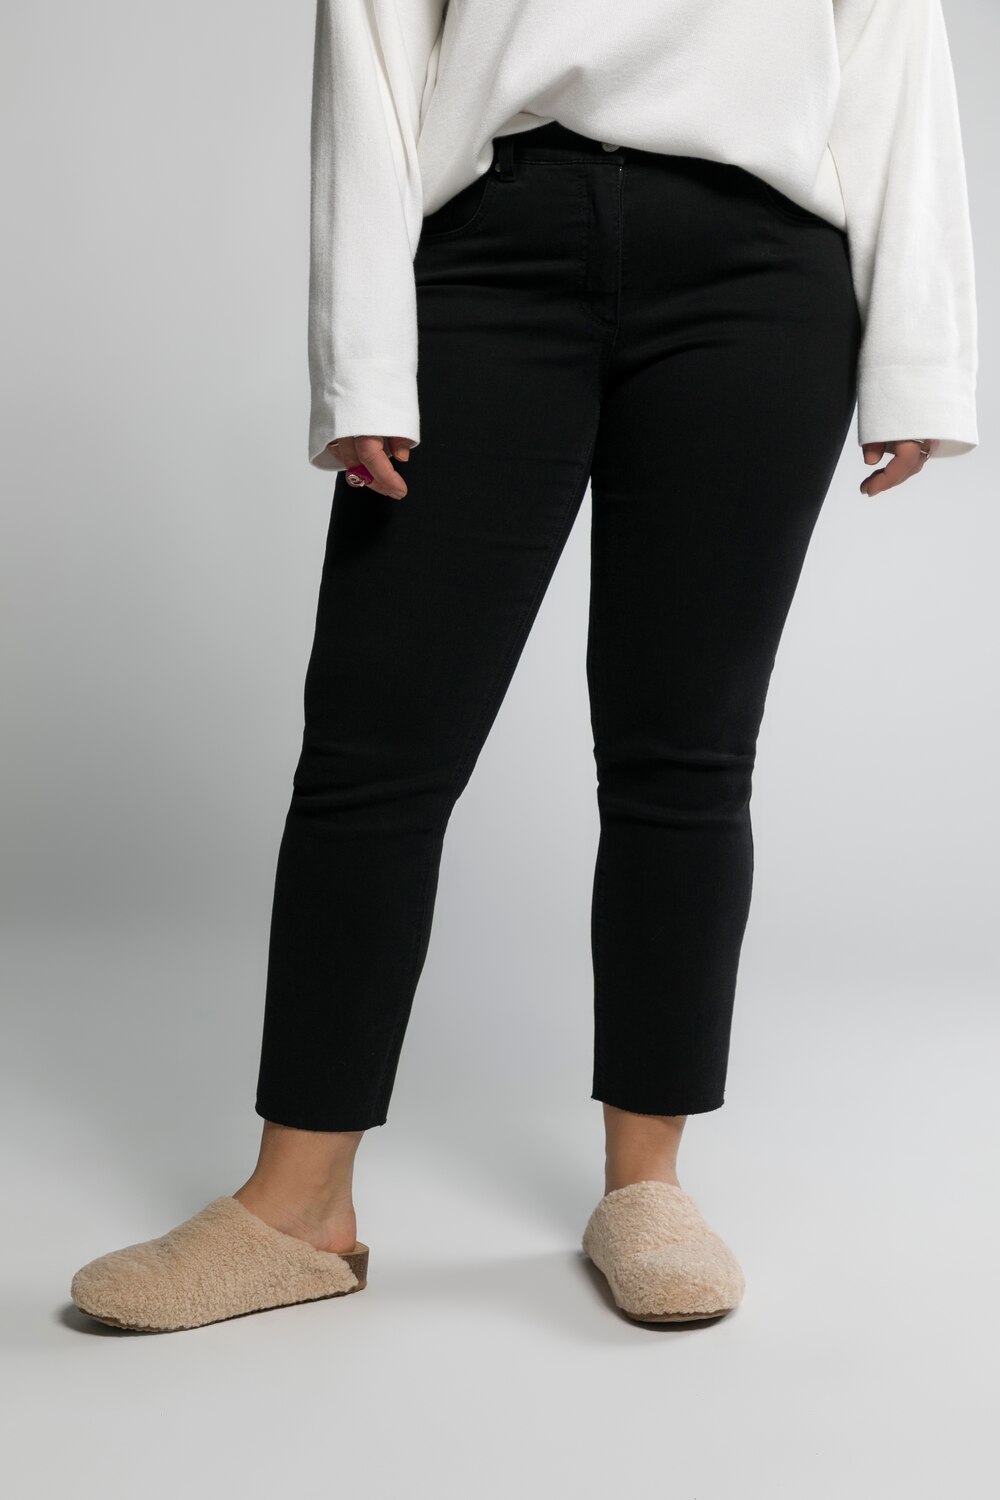 Grote Maten jeans, Dames, zwart, Maat: 58, Katoen/Polyester, Studio Untold